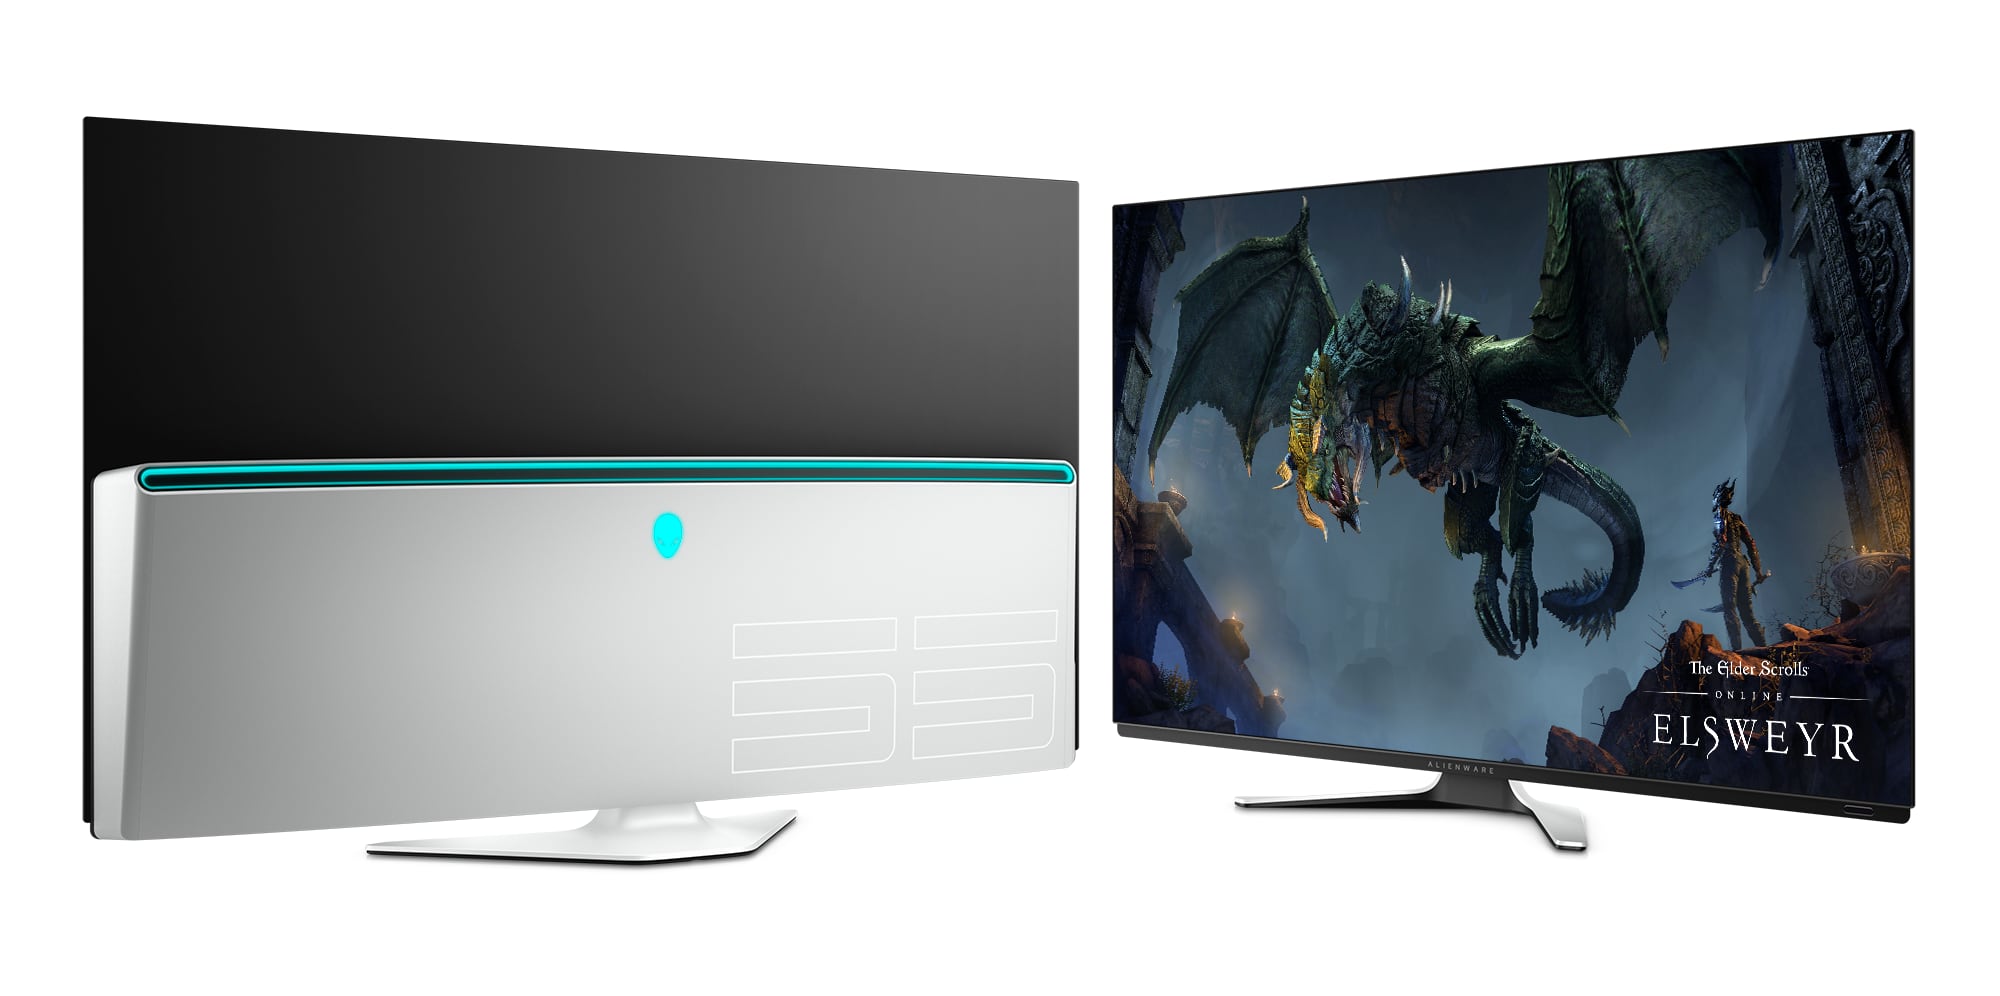 Alienware lancerer 55" OLED gaming-monitor uden HDMI 2.1 - FlatpanelsDK